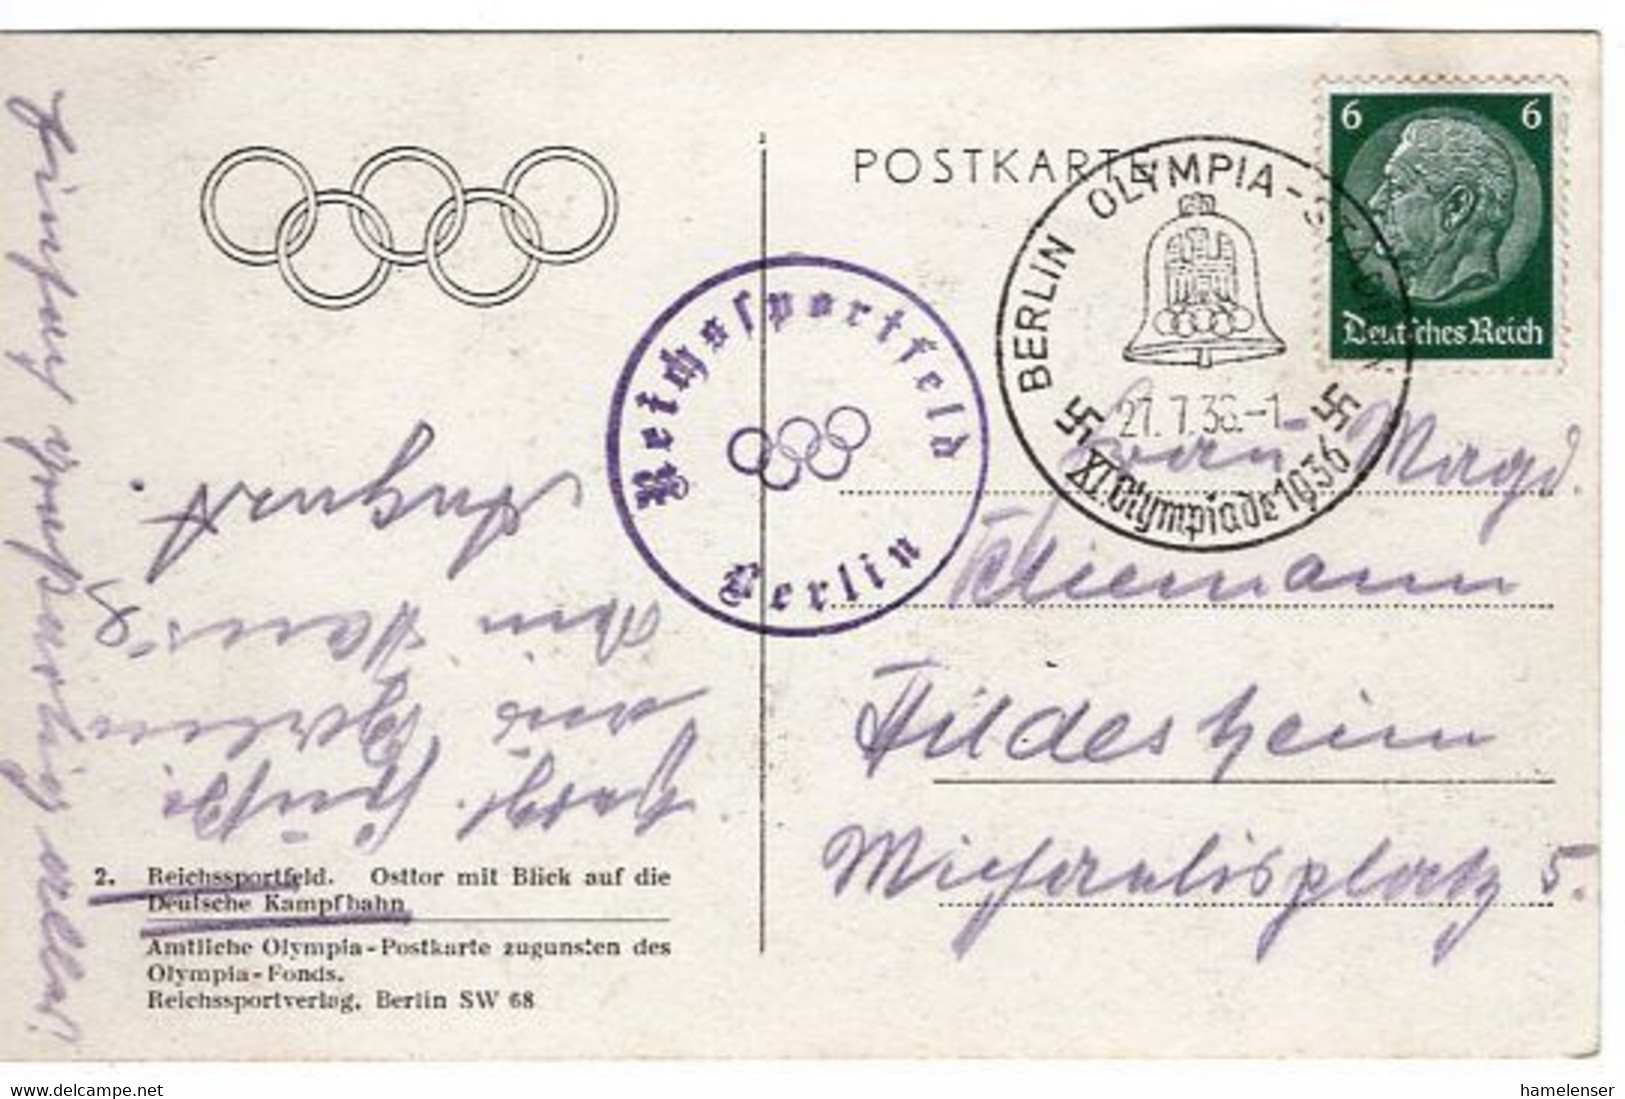 53696 - Deutsches Reich - 1936 - 6Pfg Hindenburg EF A AnsKte SoStpl BERLIN - OLYMPIA-STADION -> Hildesheim - Sommer 1936: Berlin